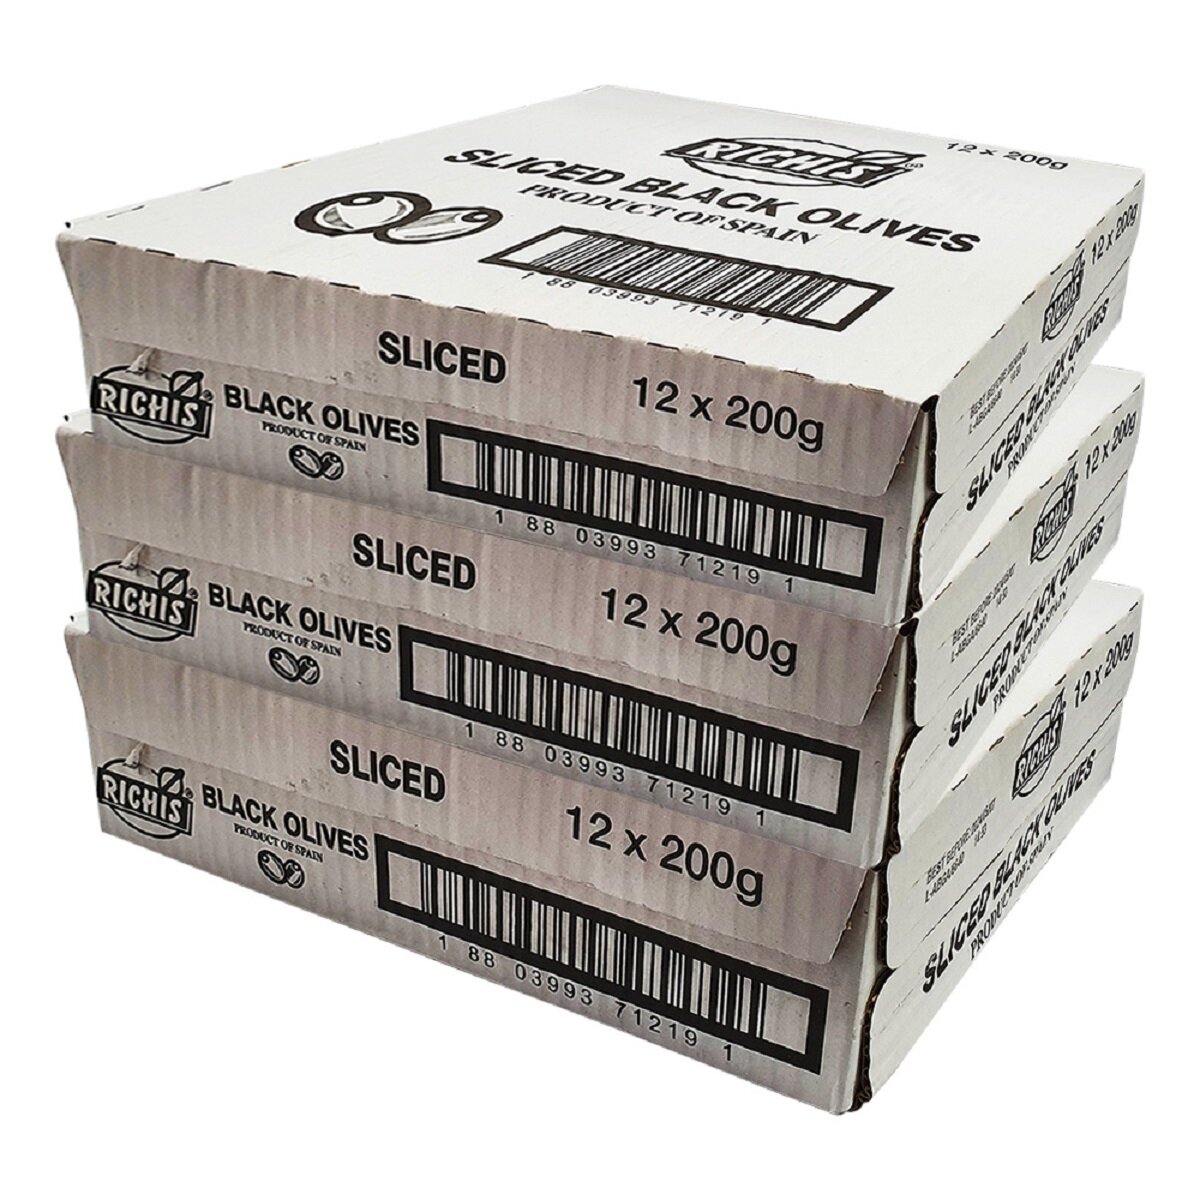 리치스블랙올리브200g x 12 x 3 Box